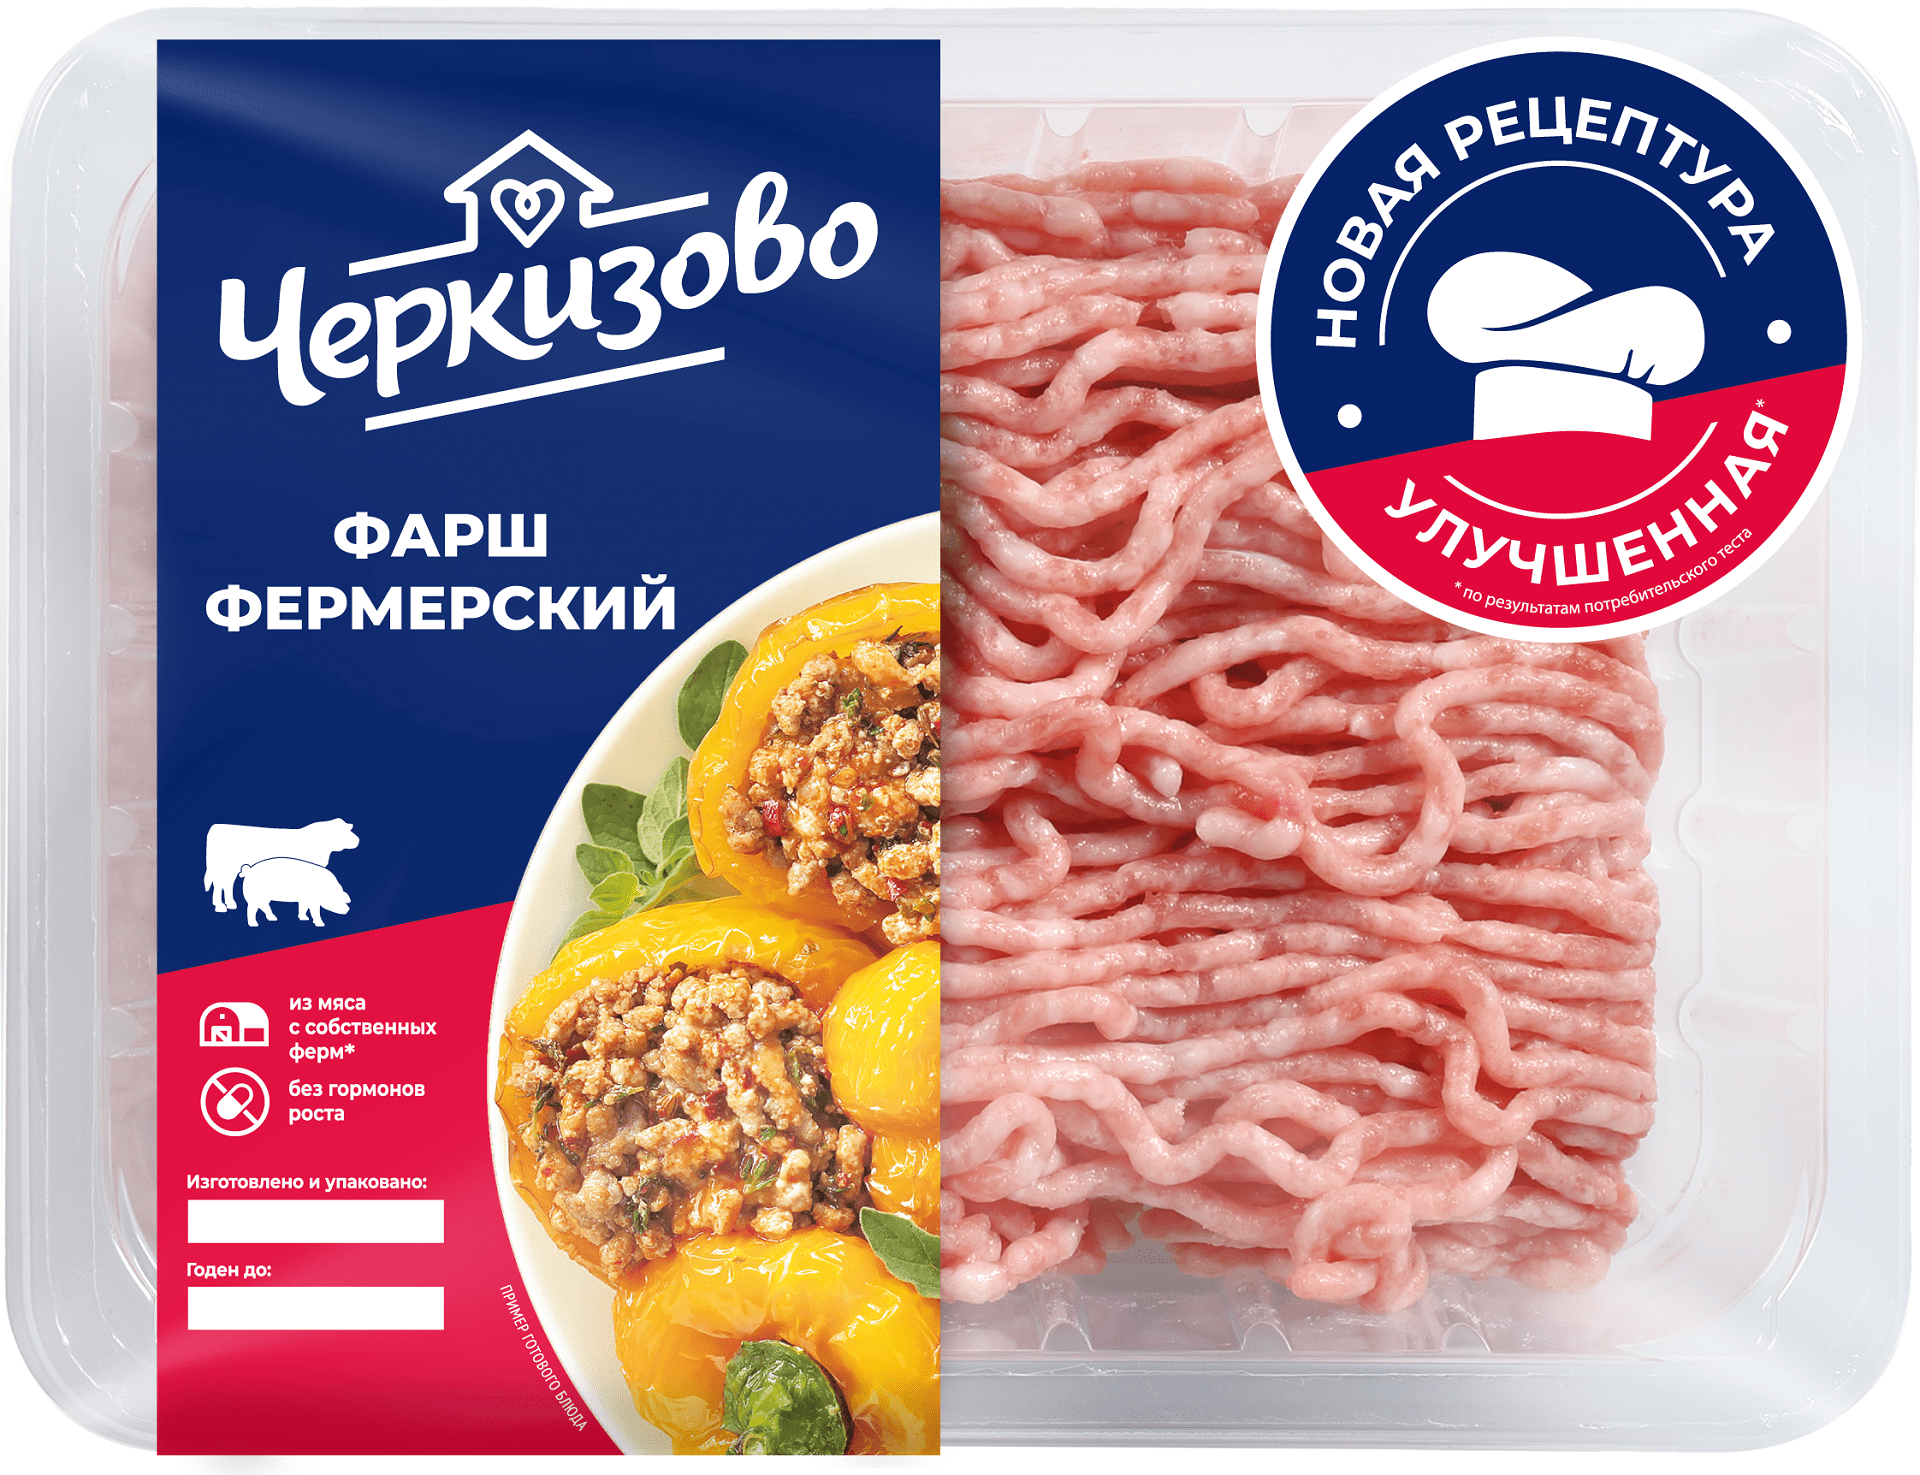 Cherkizovo brand shows 1.5x growth in ground pork sales